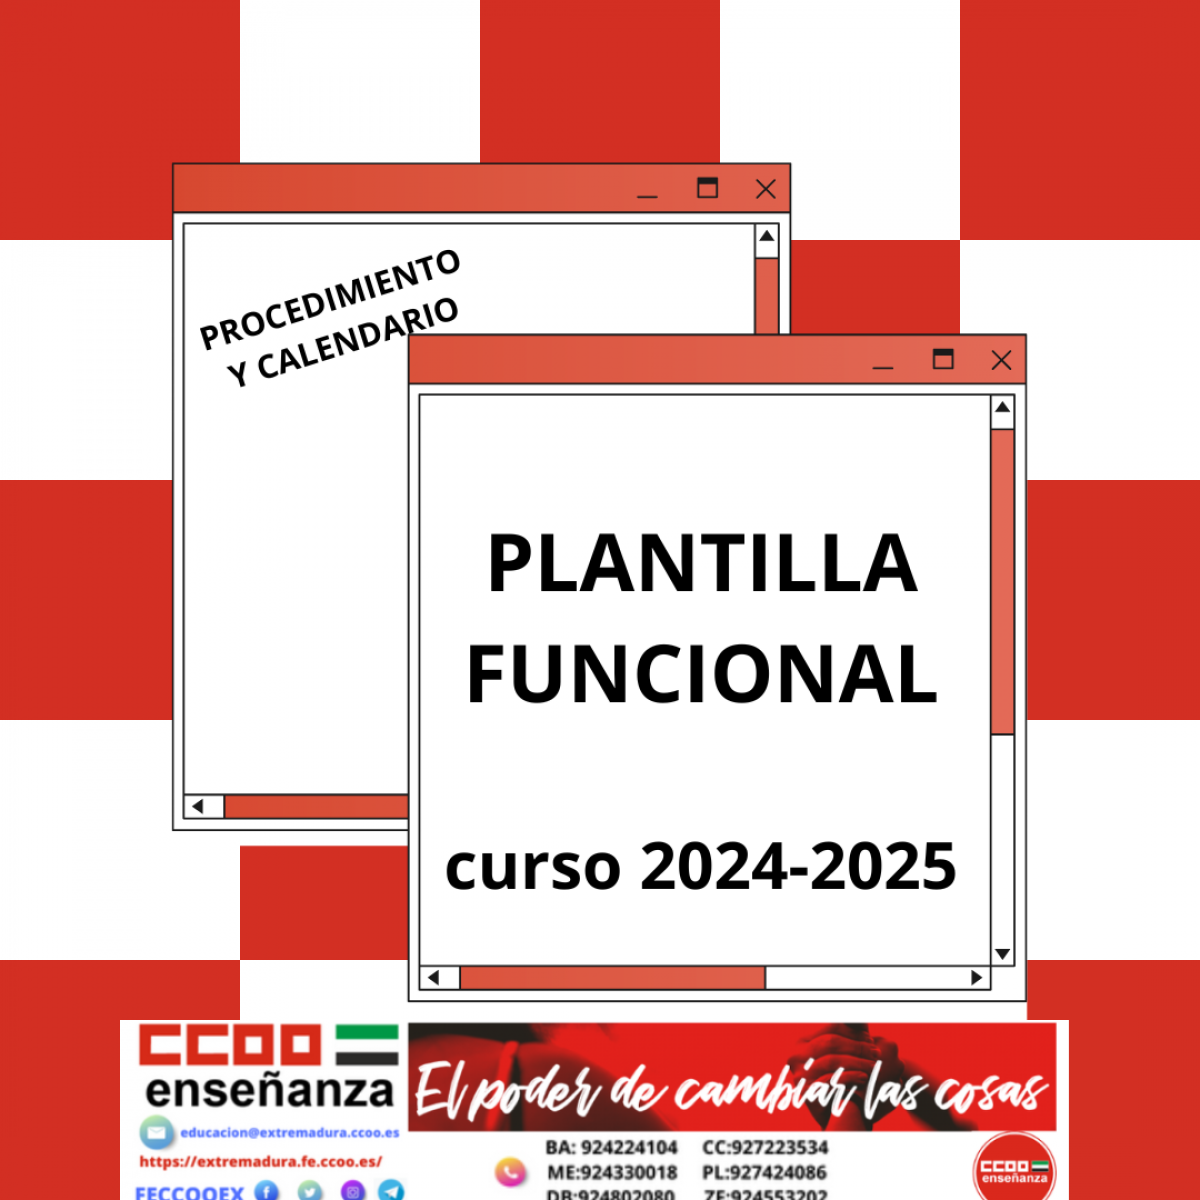 Procedimiento y calendario Plantillas funcionales 2024-2025